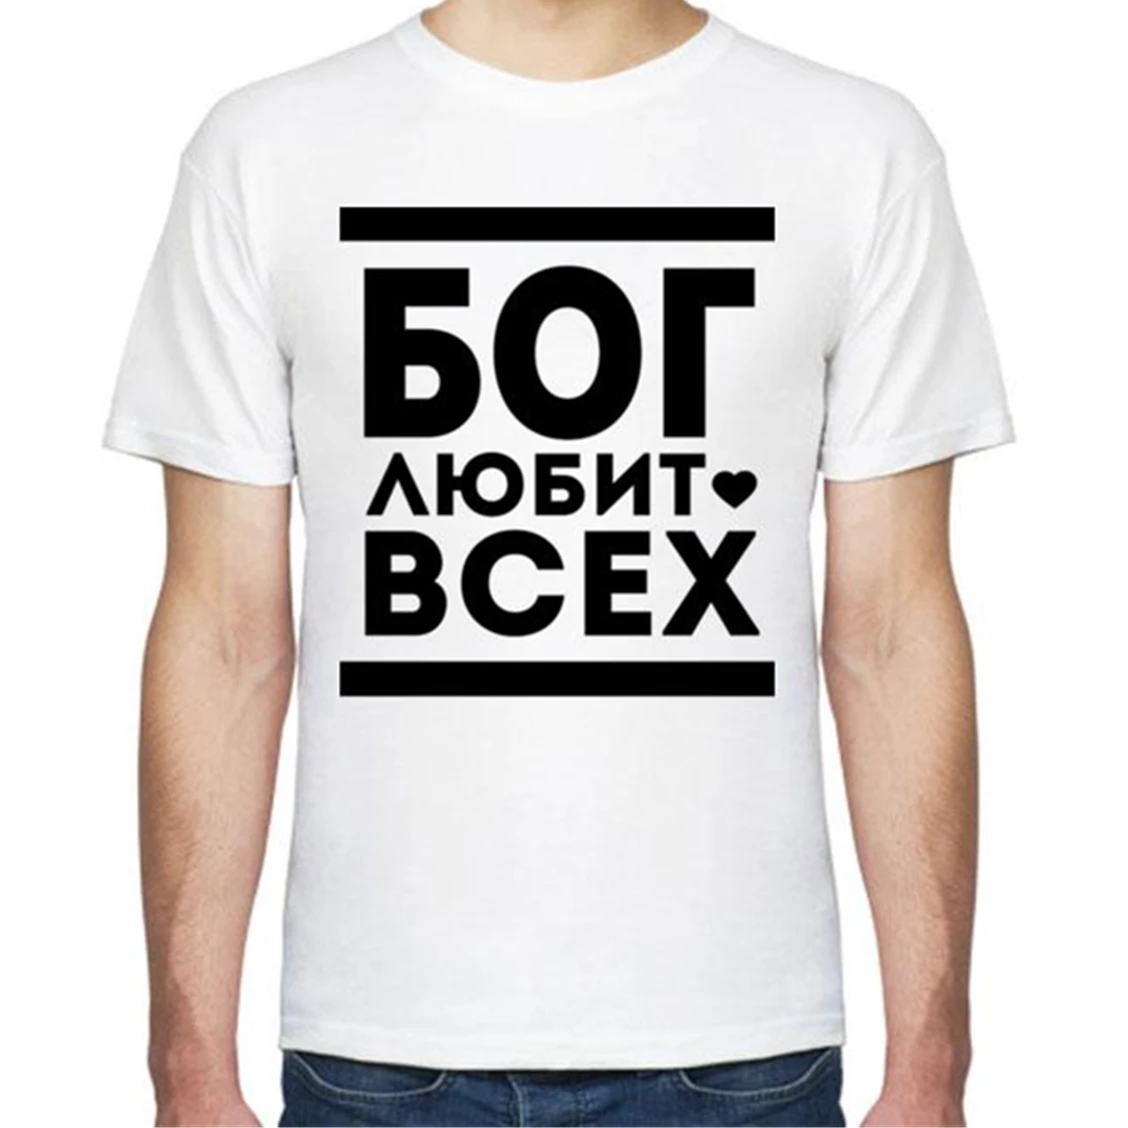 

Мужская летняя хлопчатобумажная футболка с российским Inscriptins Бог любит всех мужские футболки с короткими рукавами модная футболка для мужч...